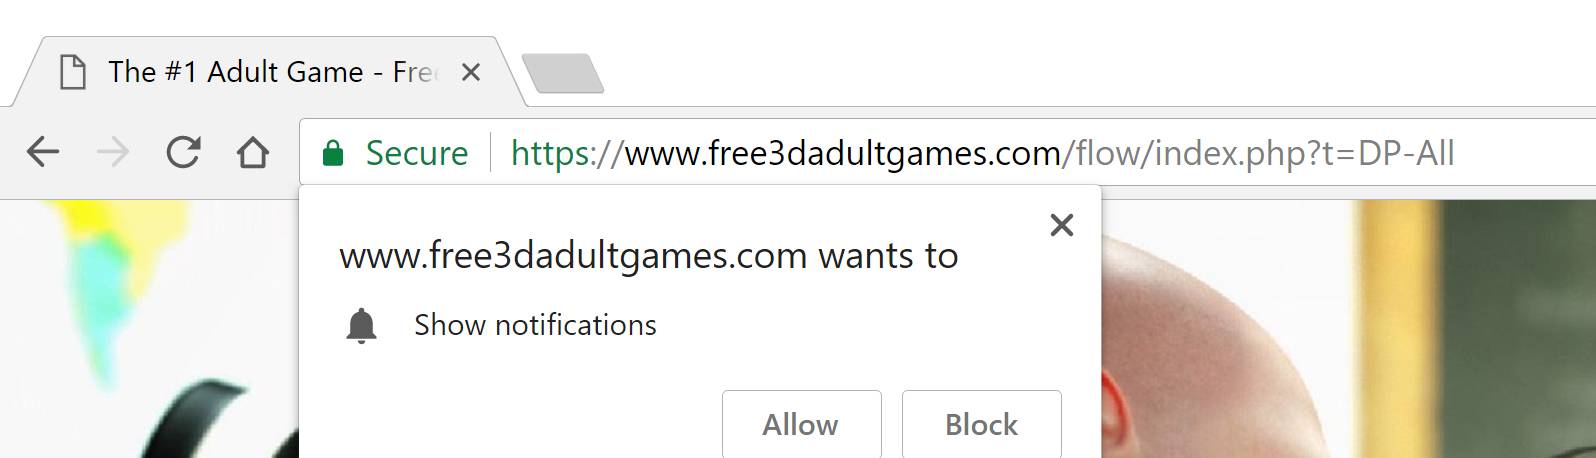 Free3dadultgames.Com Review